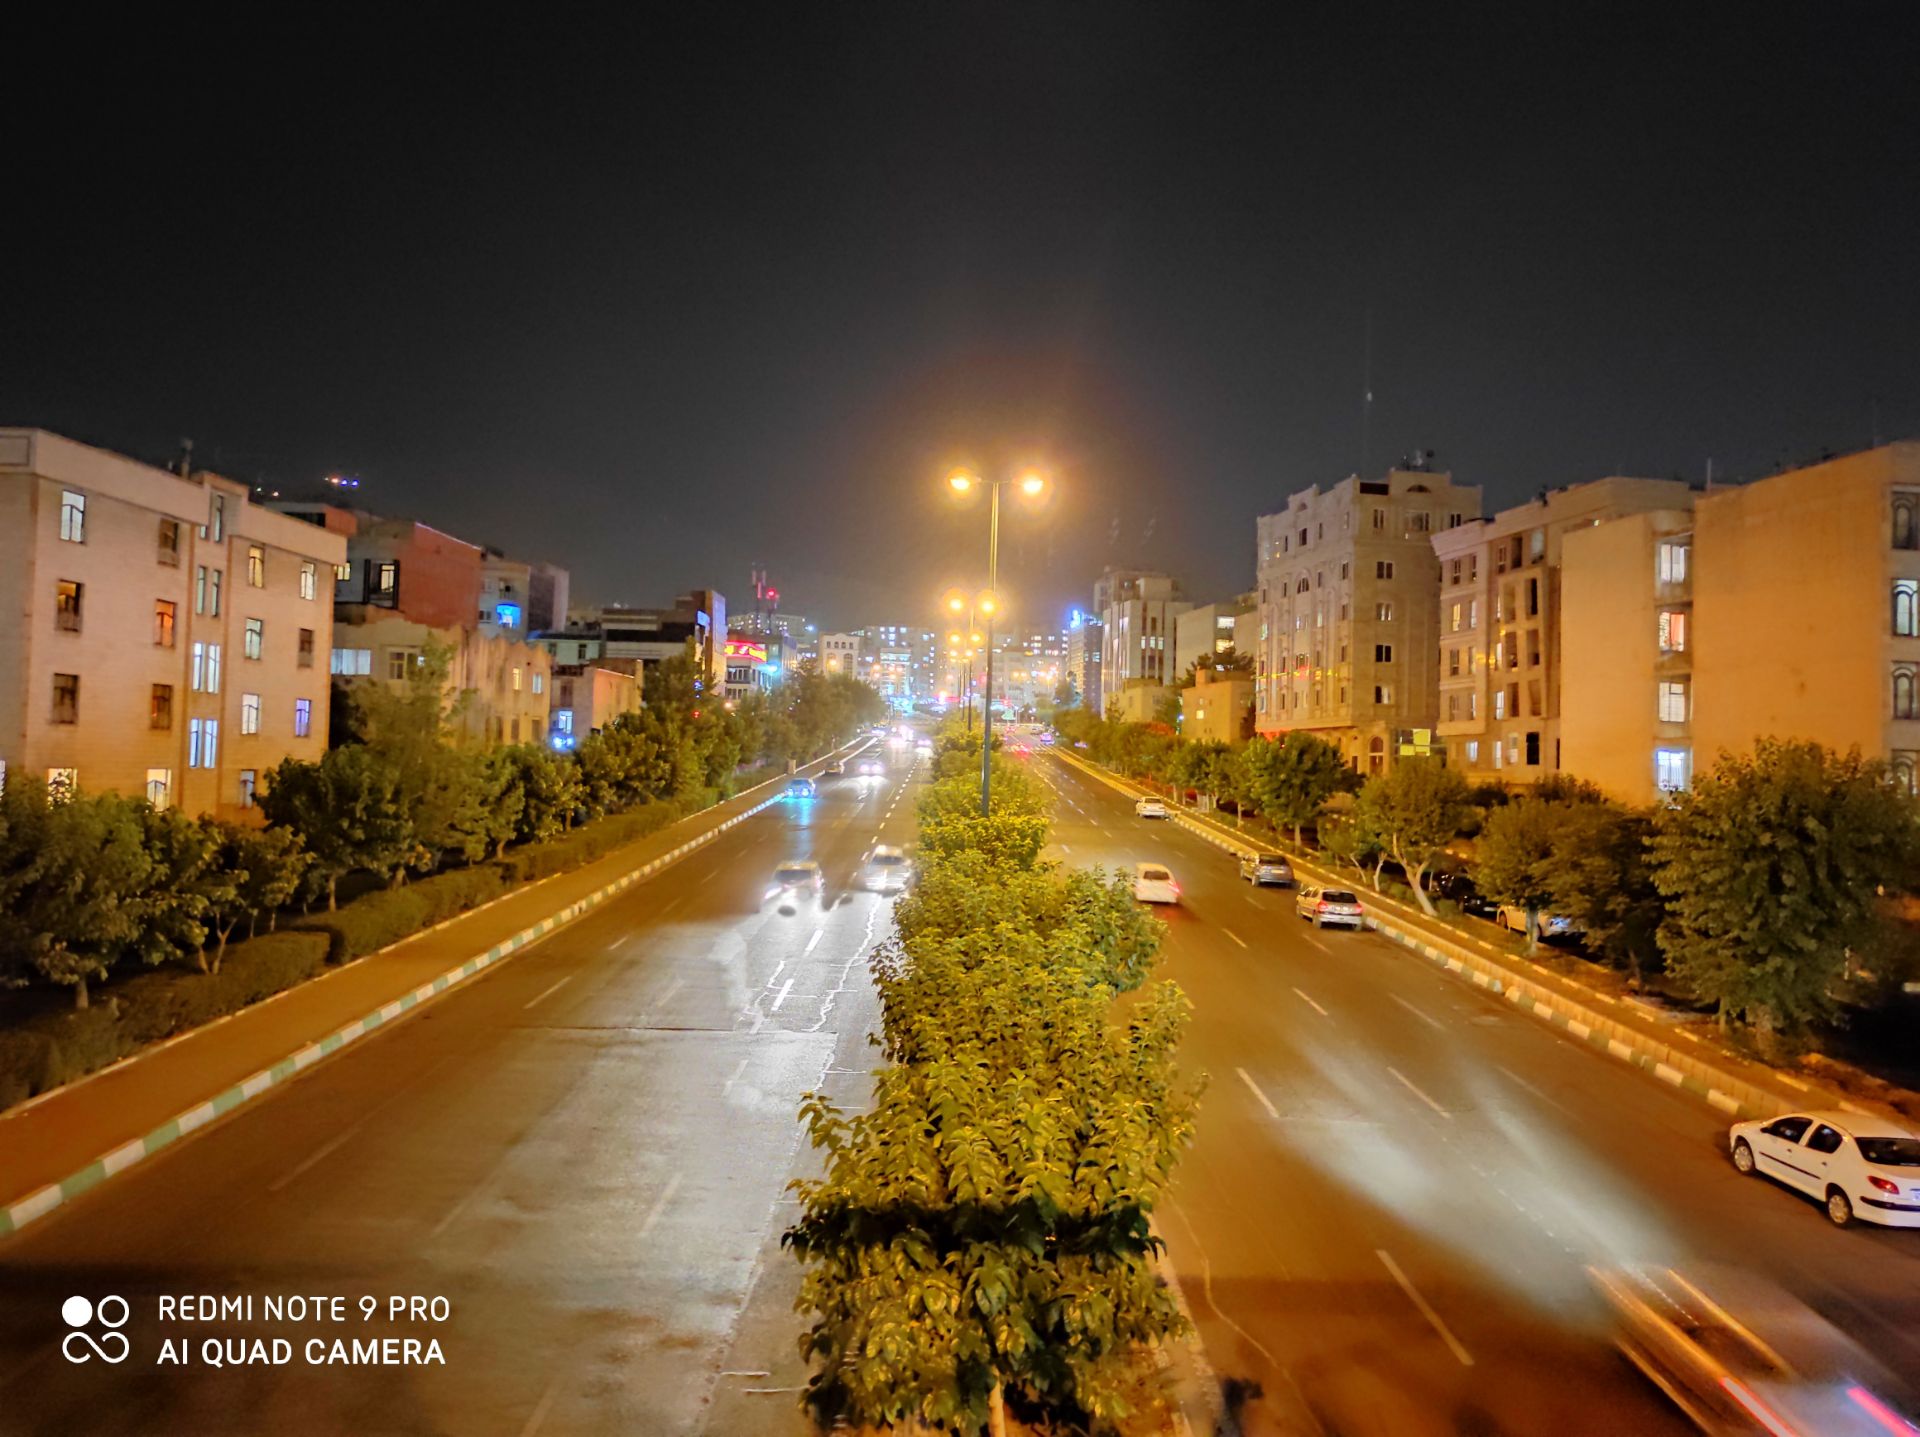 نمونه عکس ردمی نوت 9 پرو - واید - ساختمان و خیابان در تاریکی